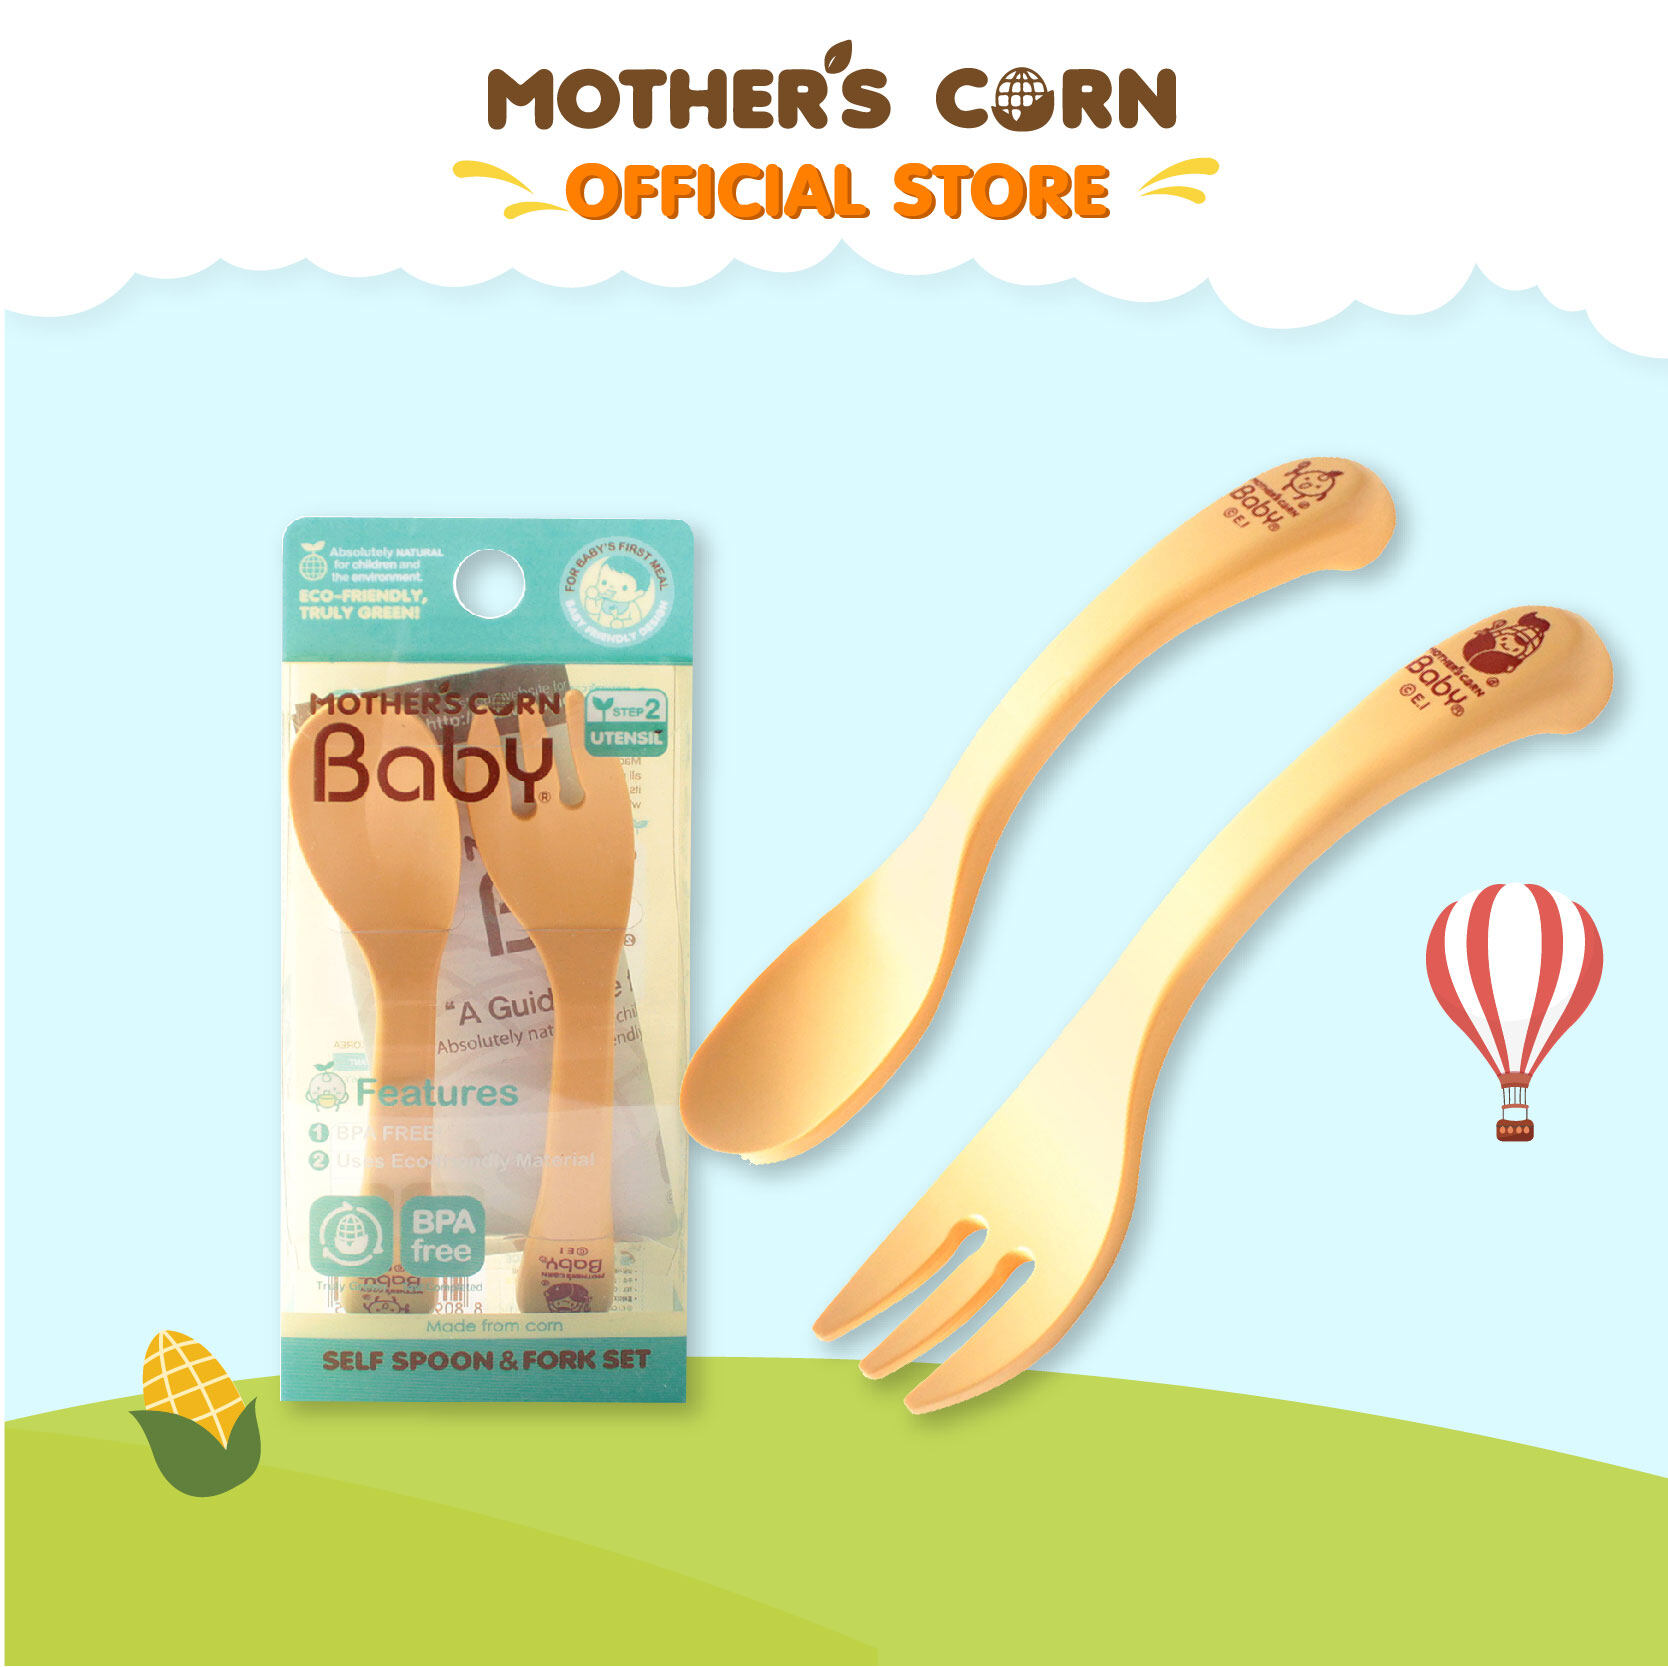 ซื้อที่ไหน Mother's Corn Self Training Spoon & Fork Set มาเธอร์คอน ชุดช้อนส้อมหัดทานเอง เสต็ป 3